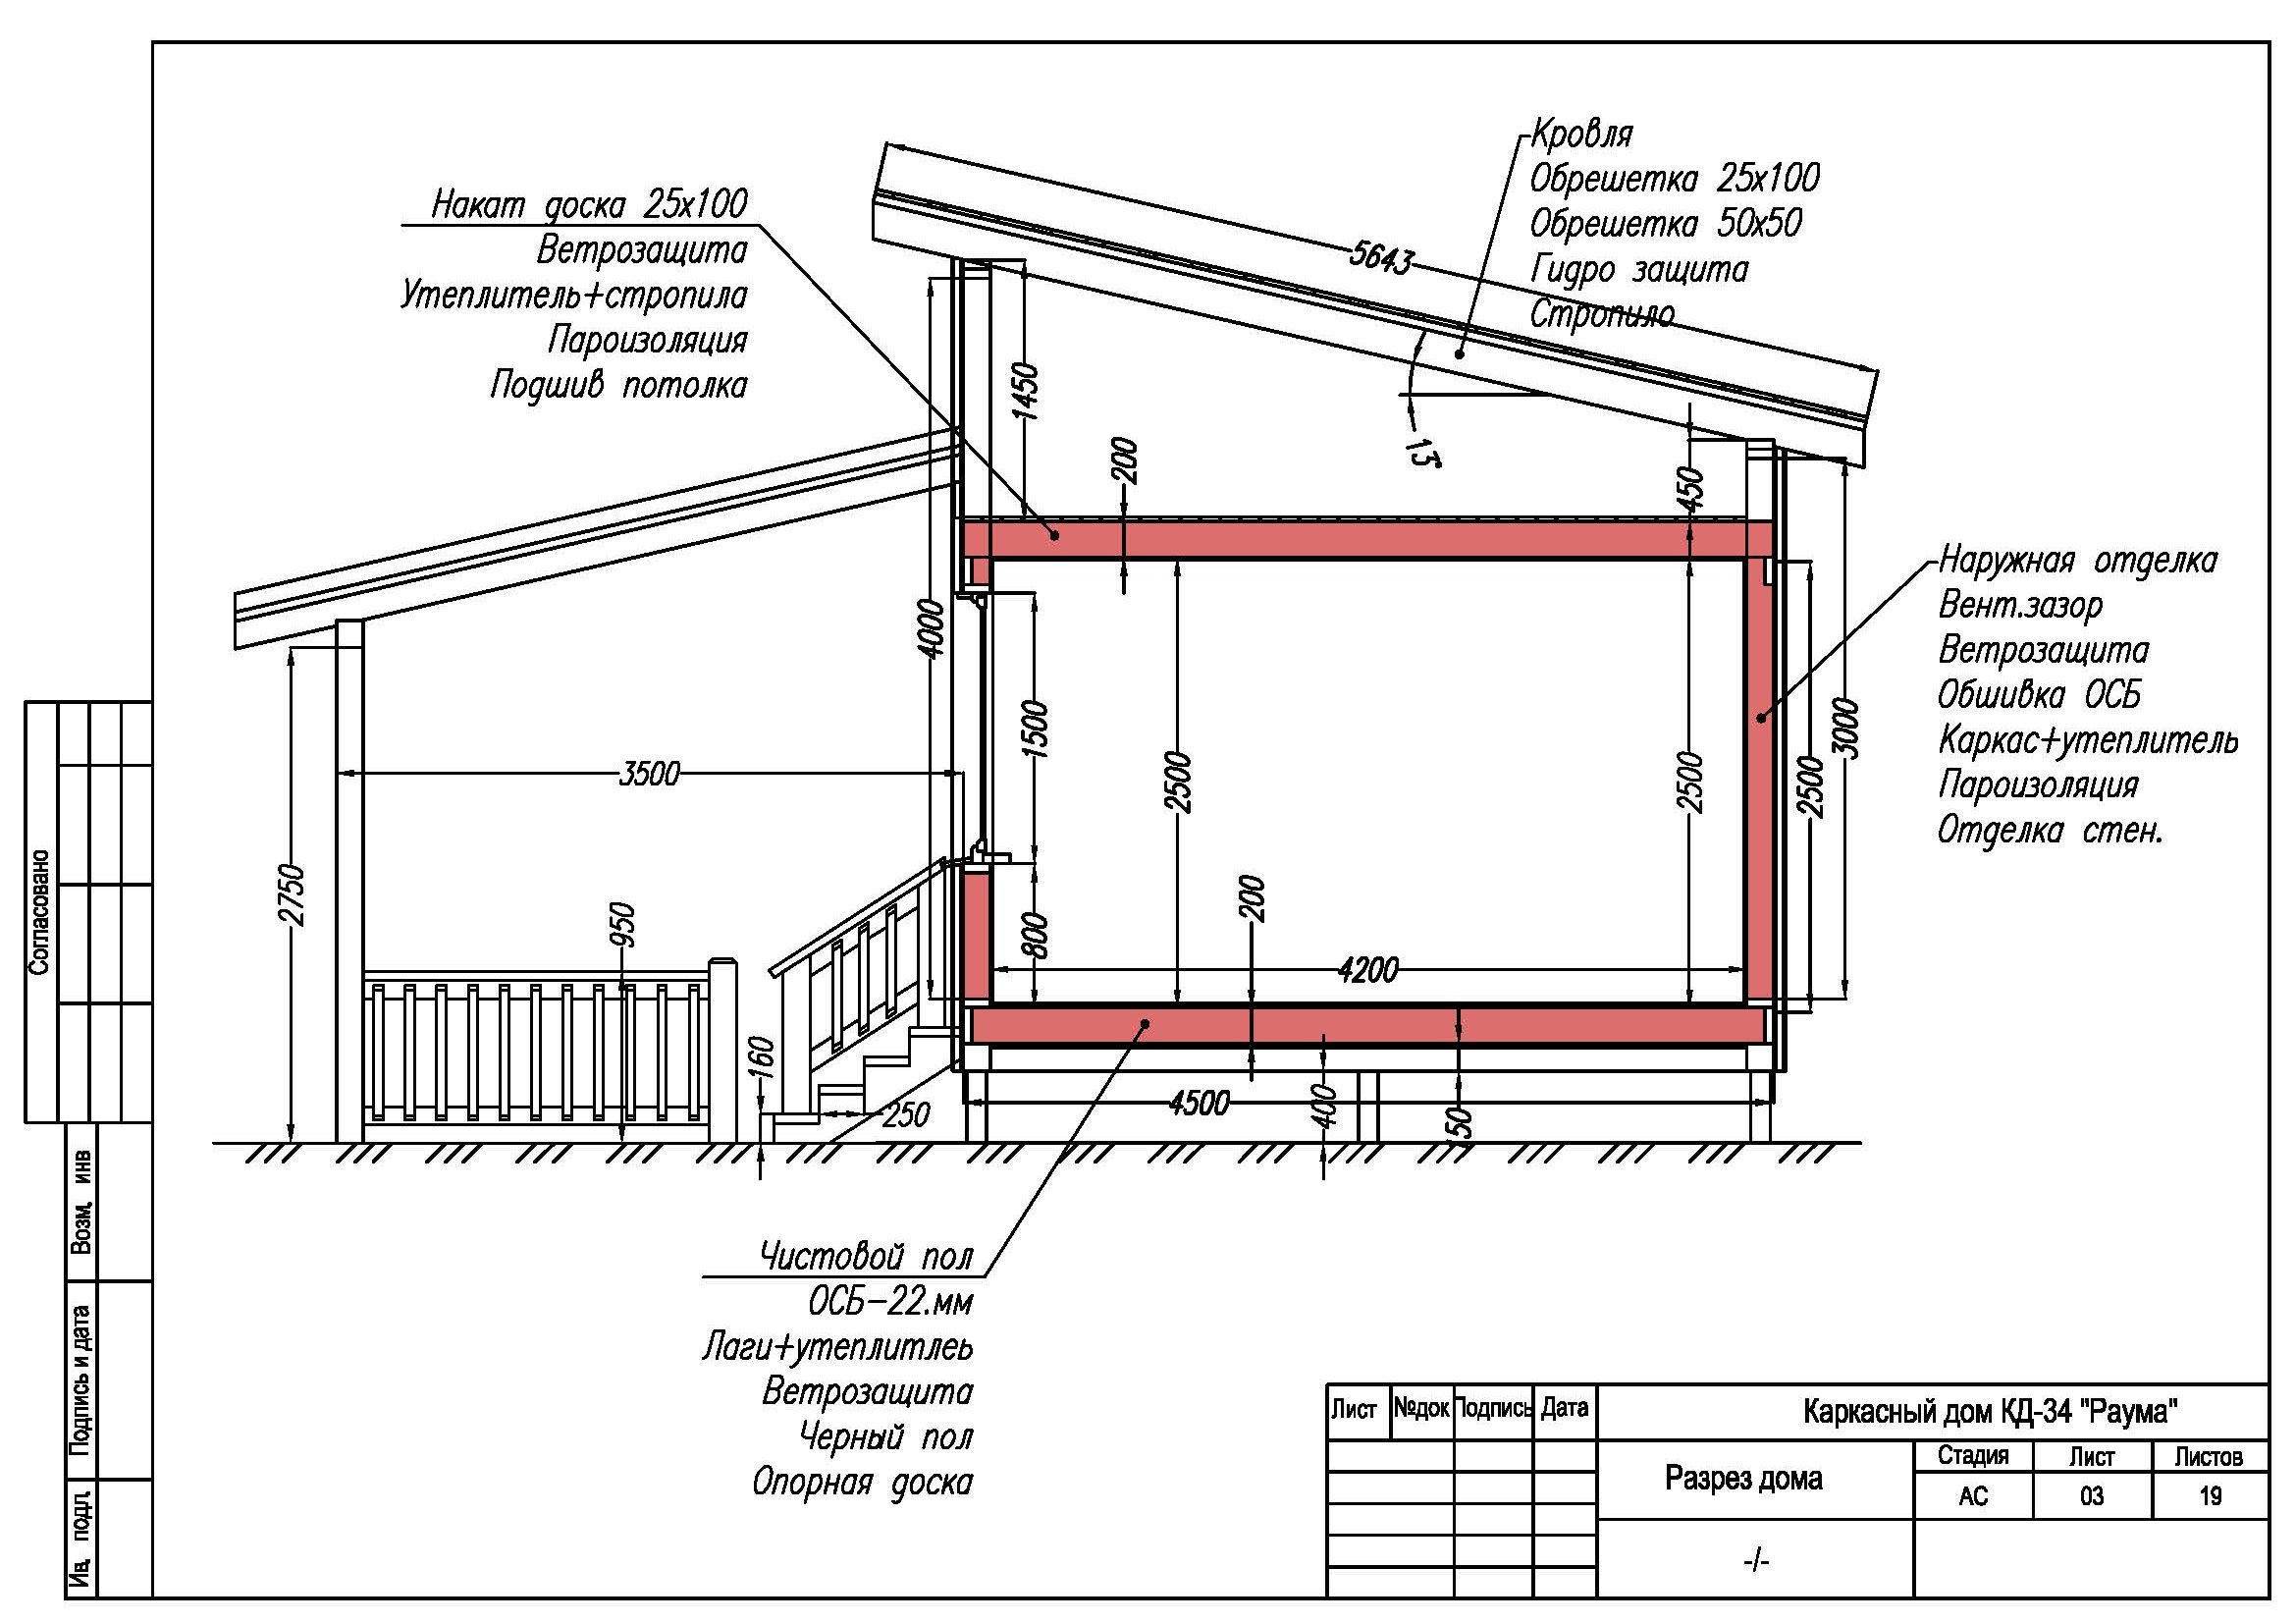 Хозблок с дровником для дачи: сарай дровяник своими руками, фото дровницы и туалета под одной крышей, как сделать проект бытовки